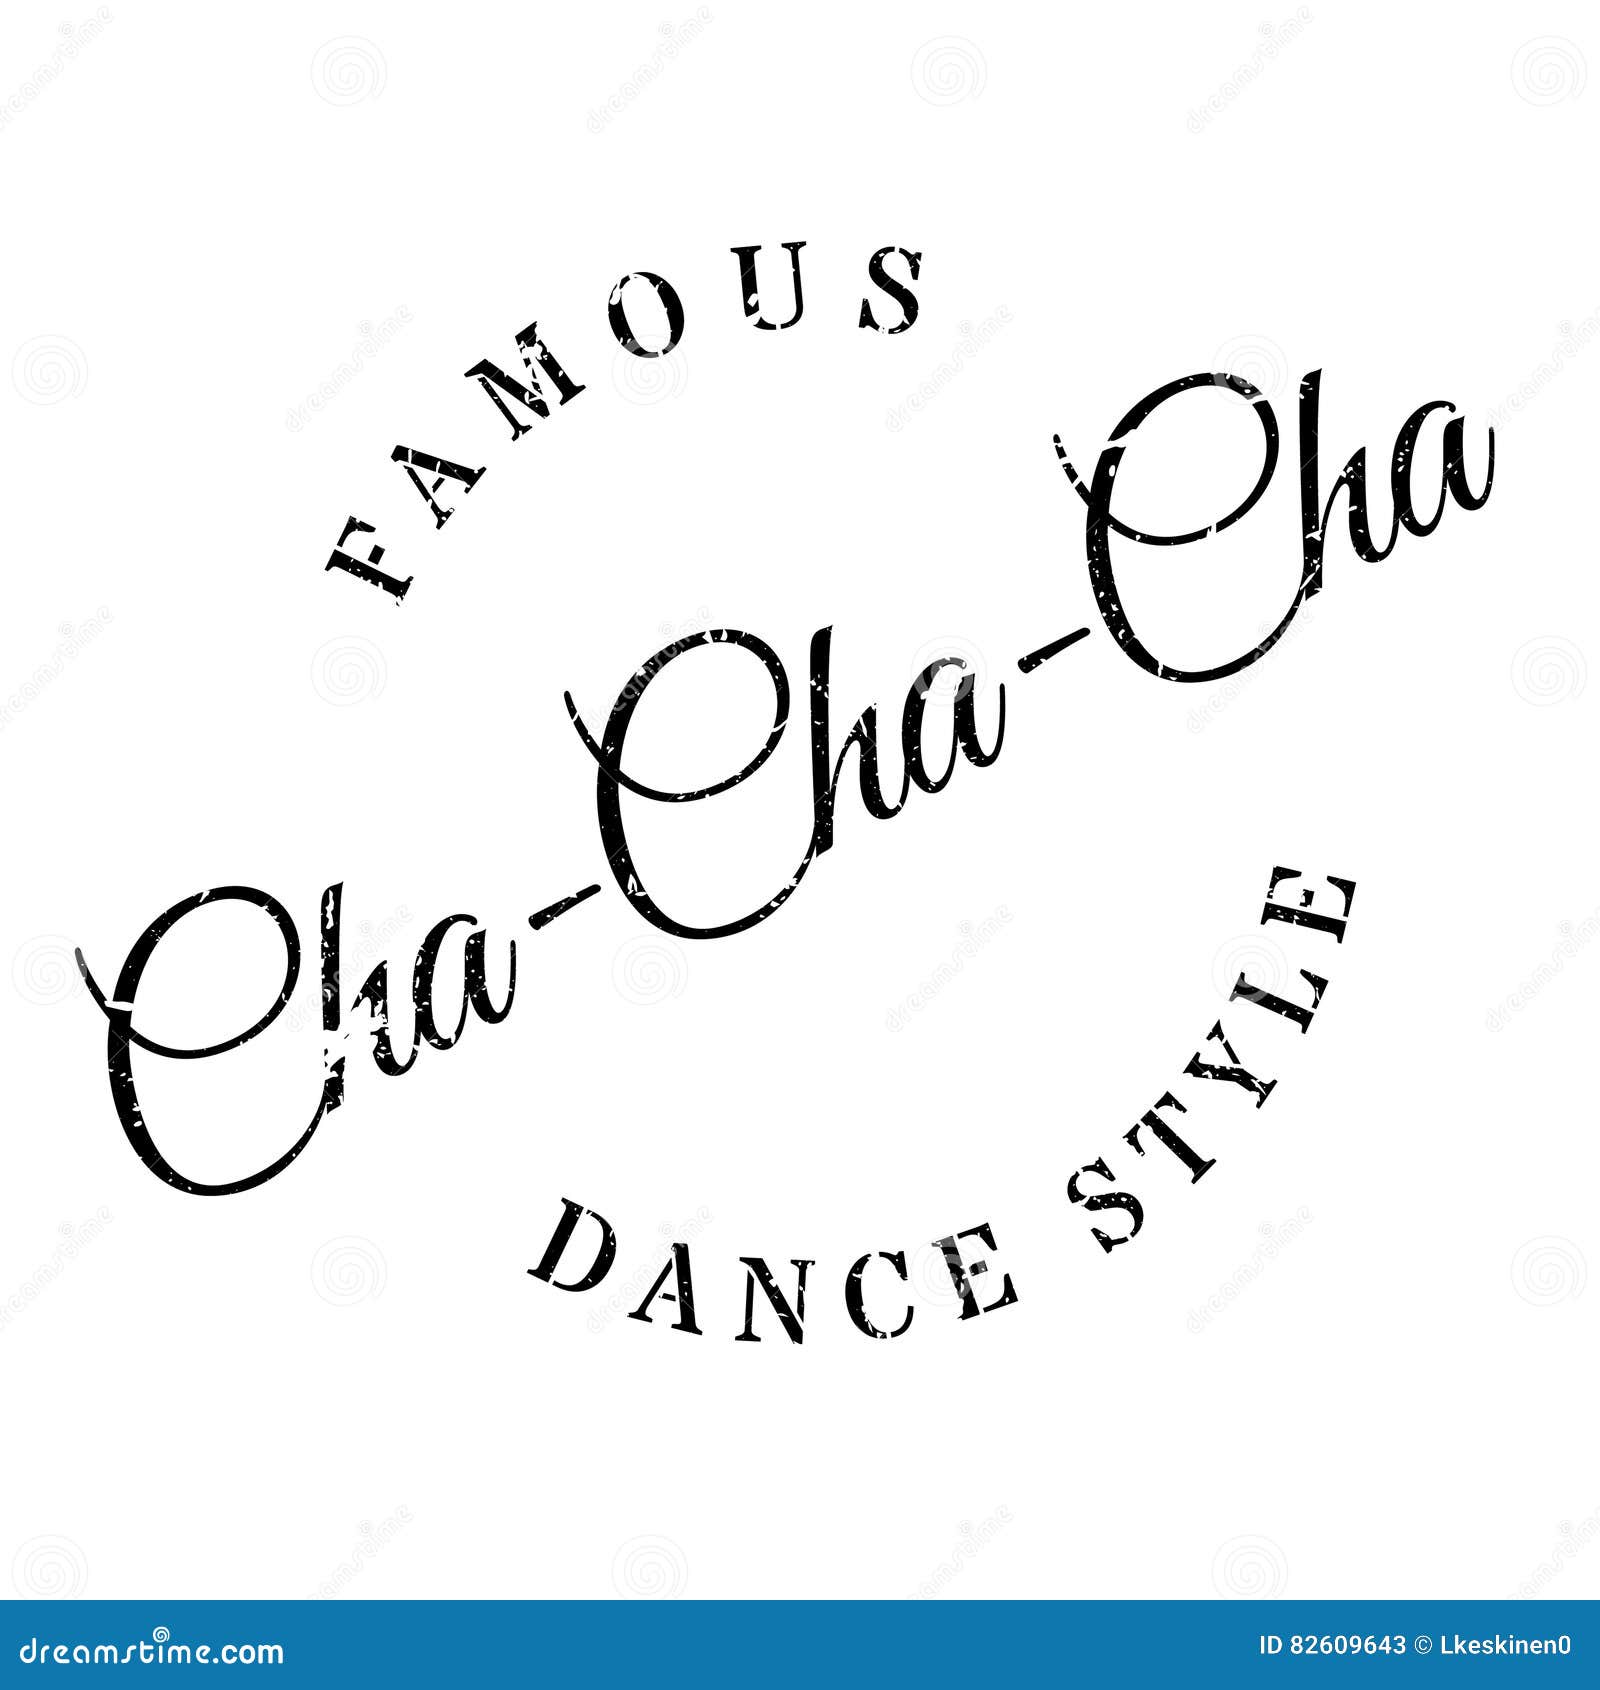 Italian Cha Cha Cha Songs | HubPages